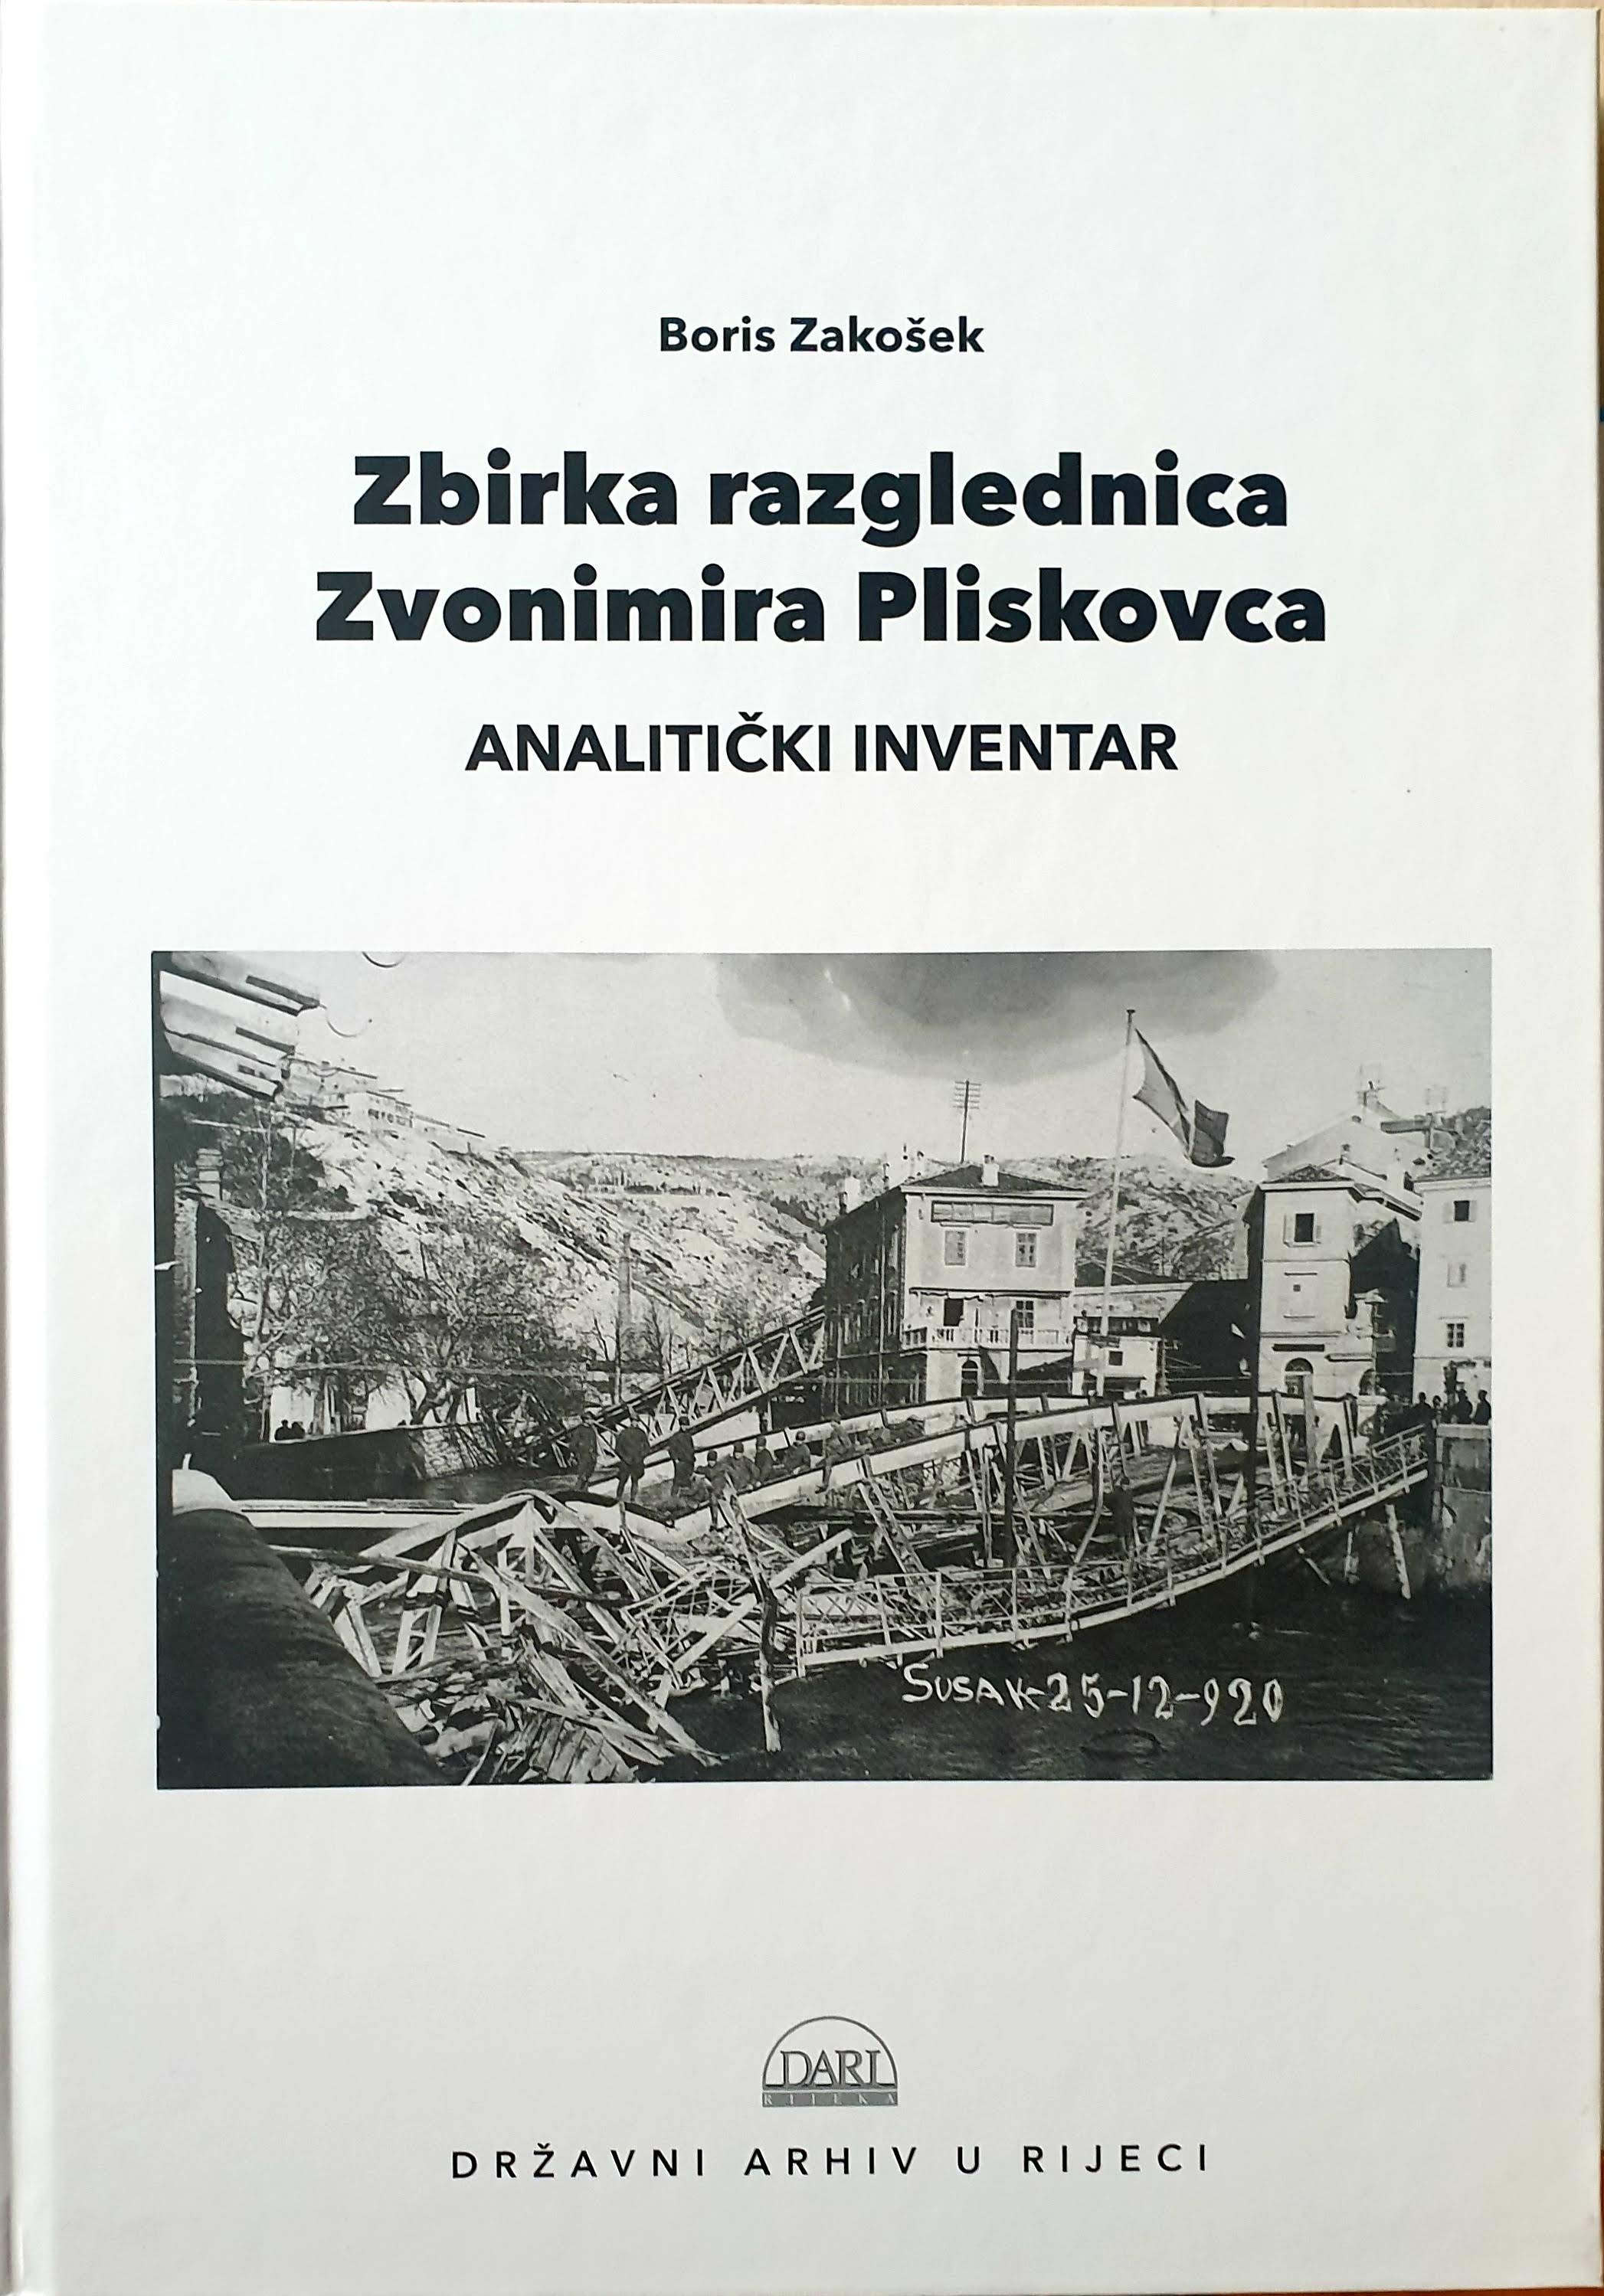 Danuncijada - zbirka razglednica Zvonimira Pliskovca 